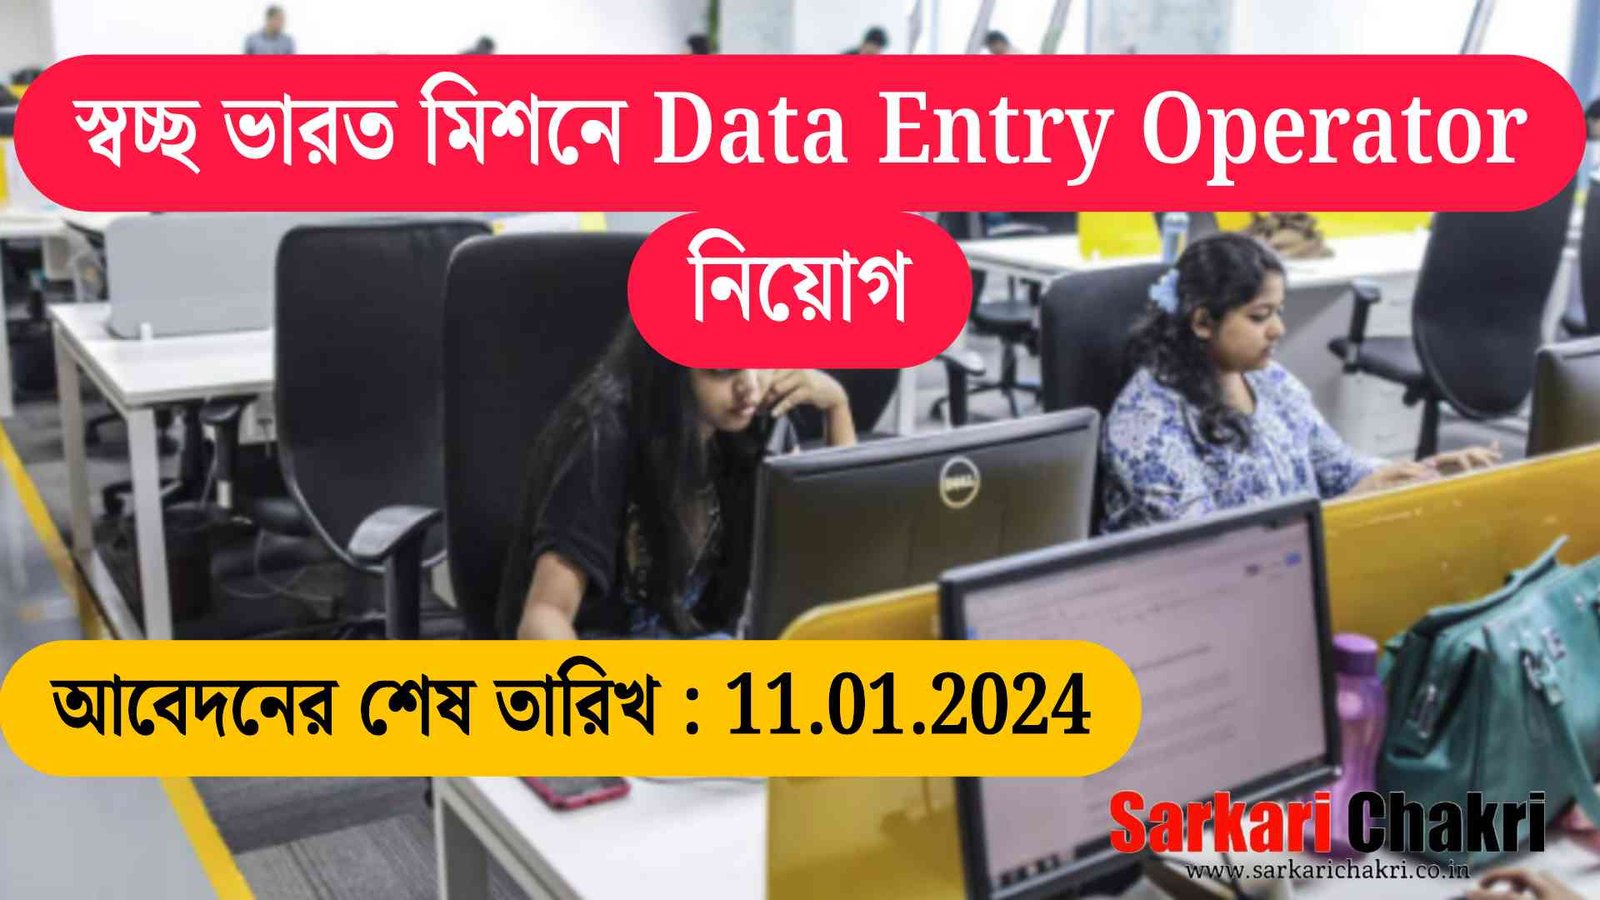 স্বচ্ছ ভারত মিশনে Data Entry Operator নিয়োগ